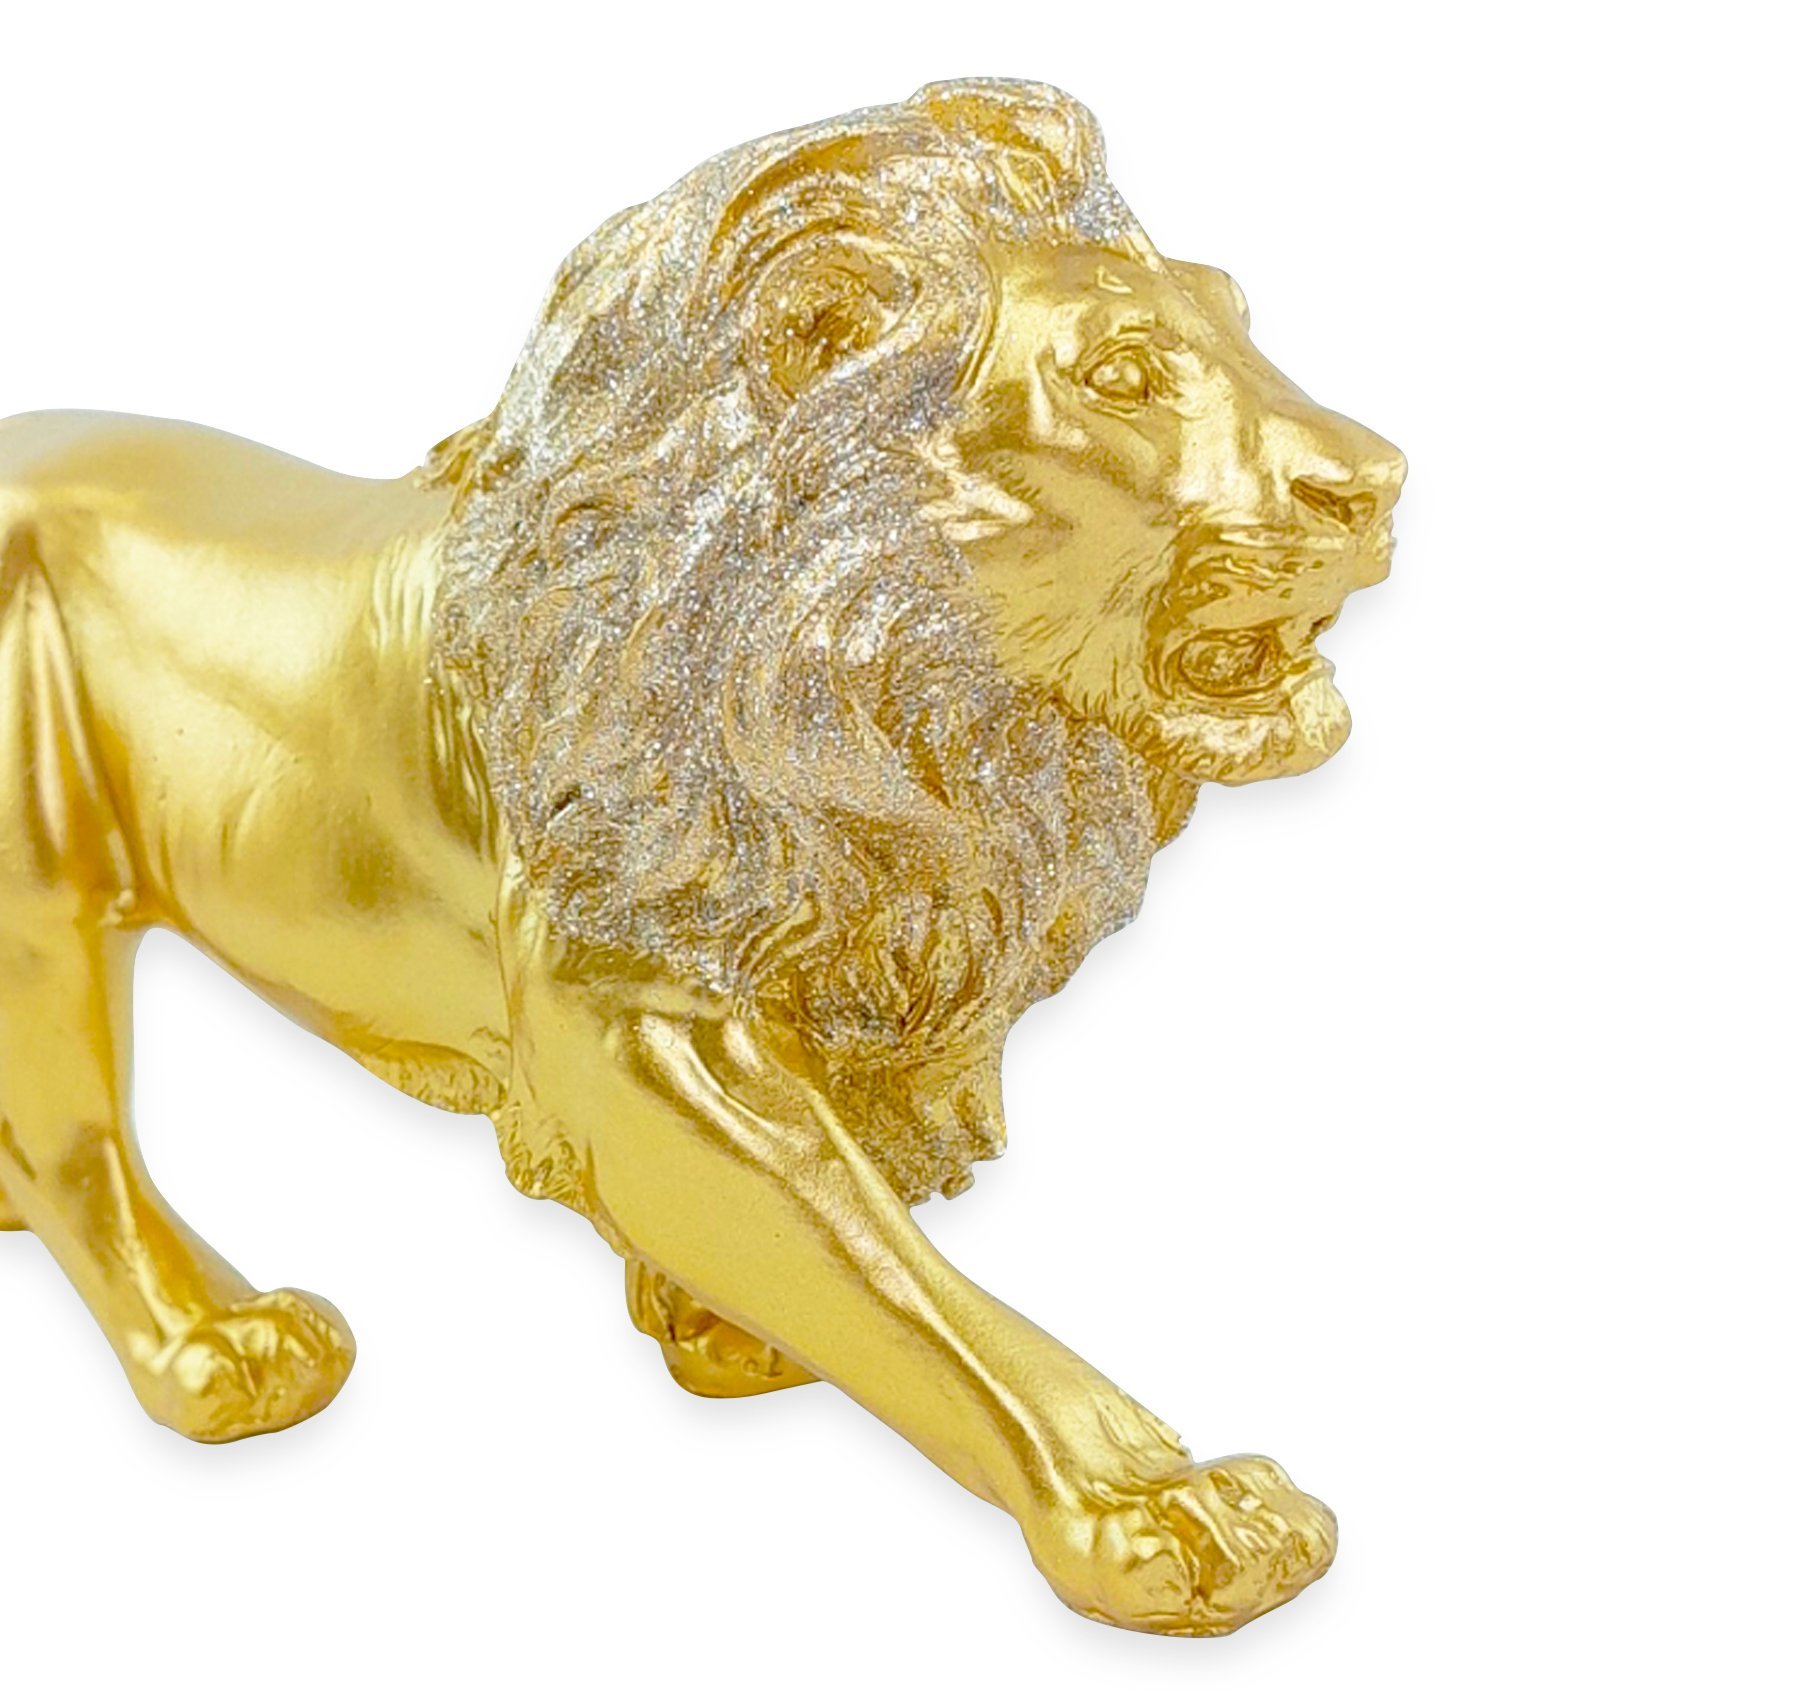 Estatua Enfeite de Resina Leão Dourado Brilhante 21cm - 2